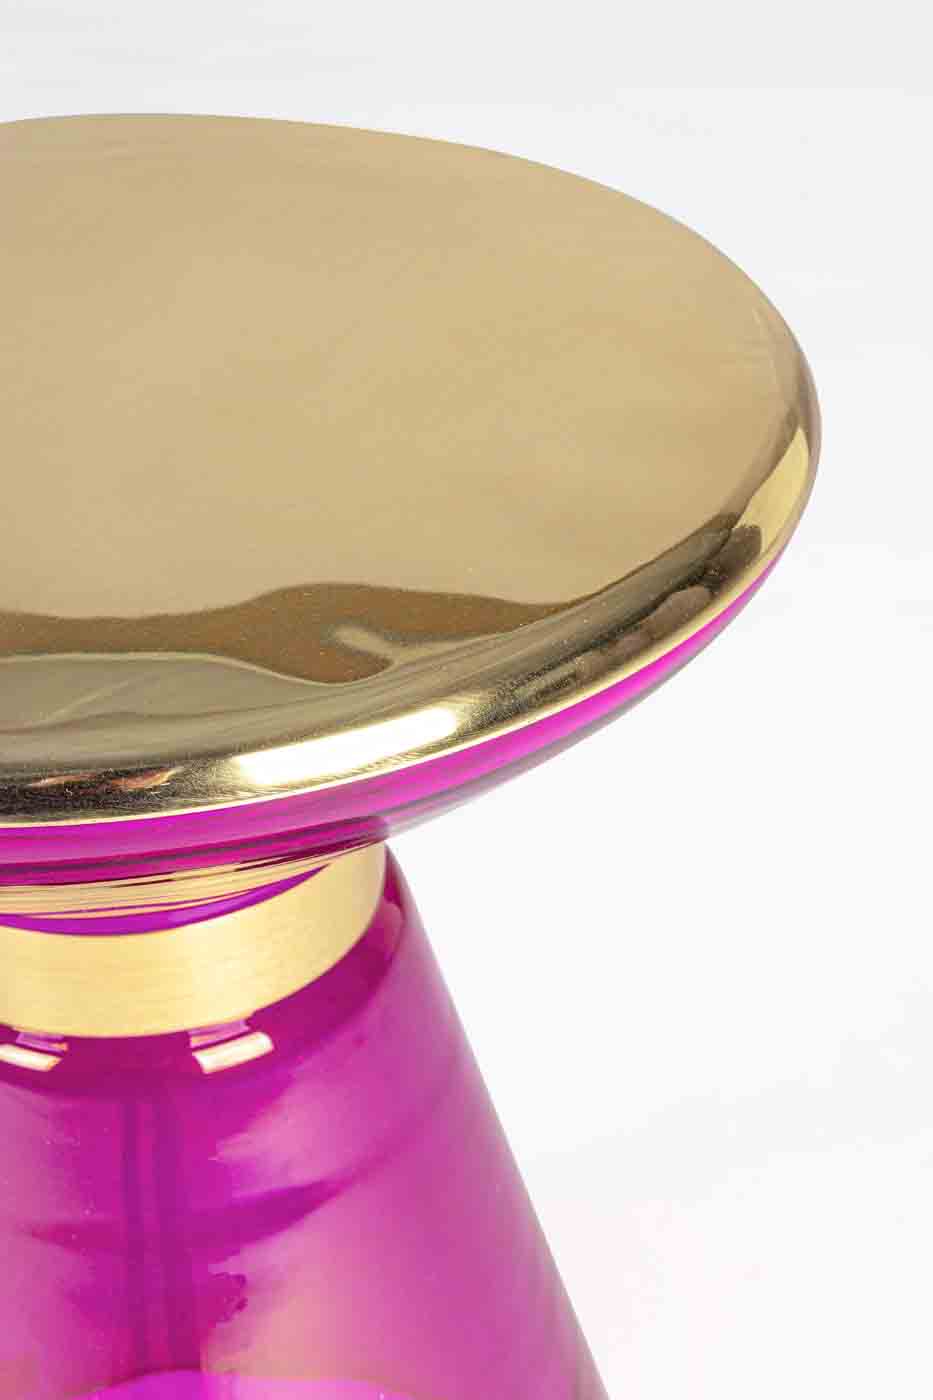 Der Beistelltisch Meriel hat ein modernes Design. Gefertigt wurde der Tisch aus Glas, die Oberfläche ist aus Messing vergoldetem Metall. Der Tisch hat einen Rosa Farbton.